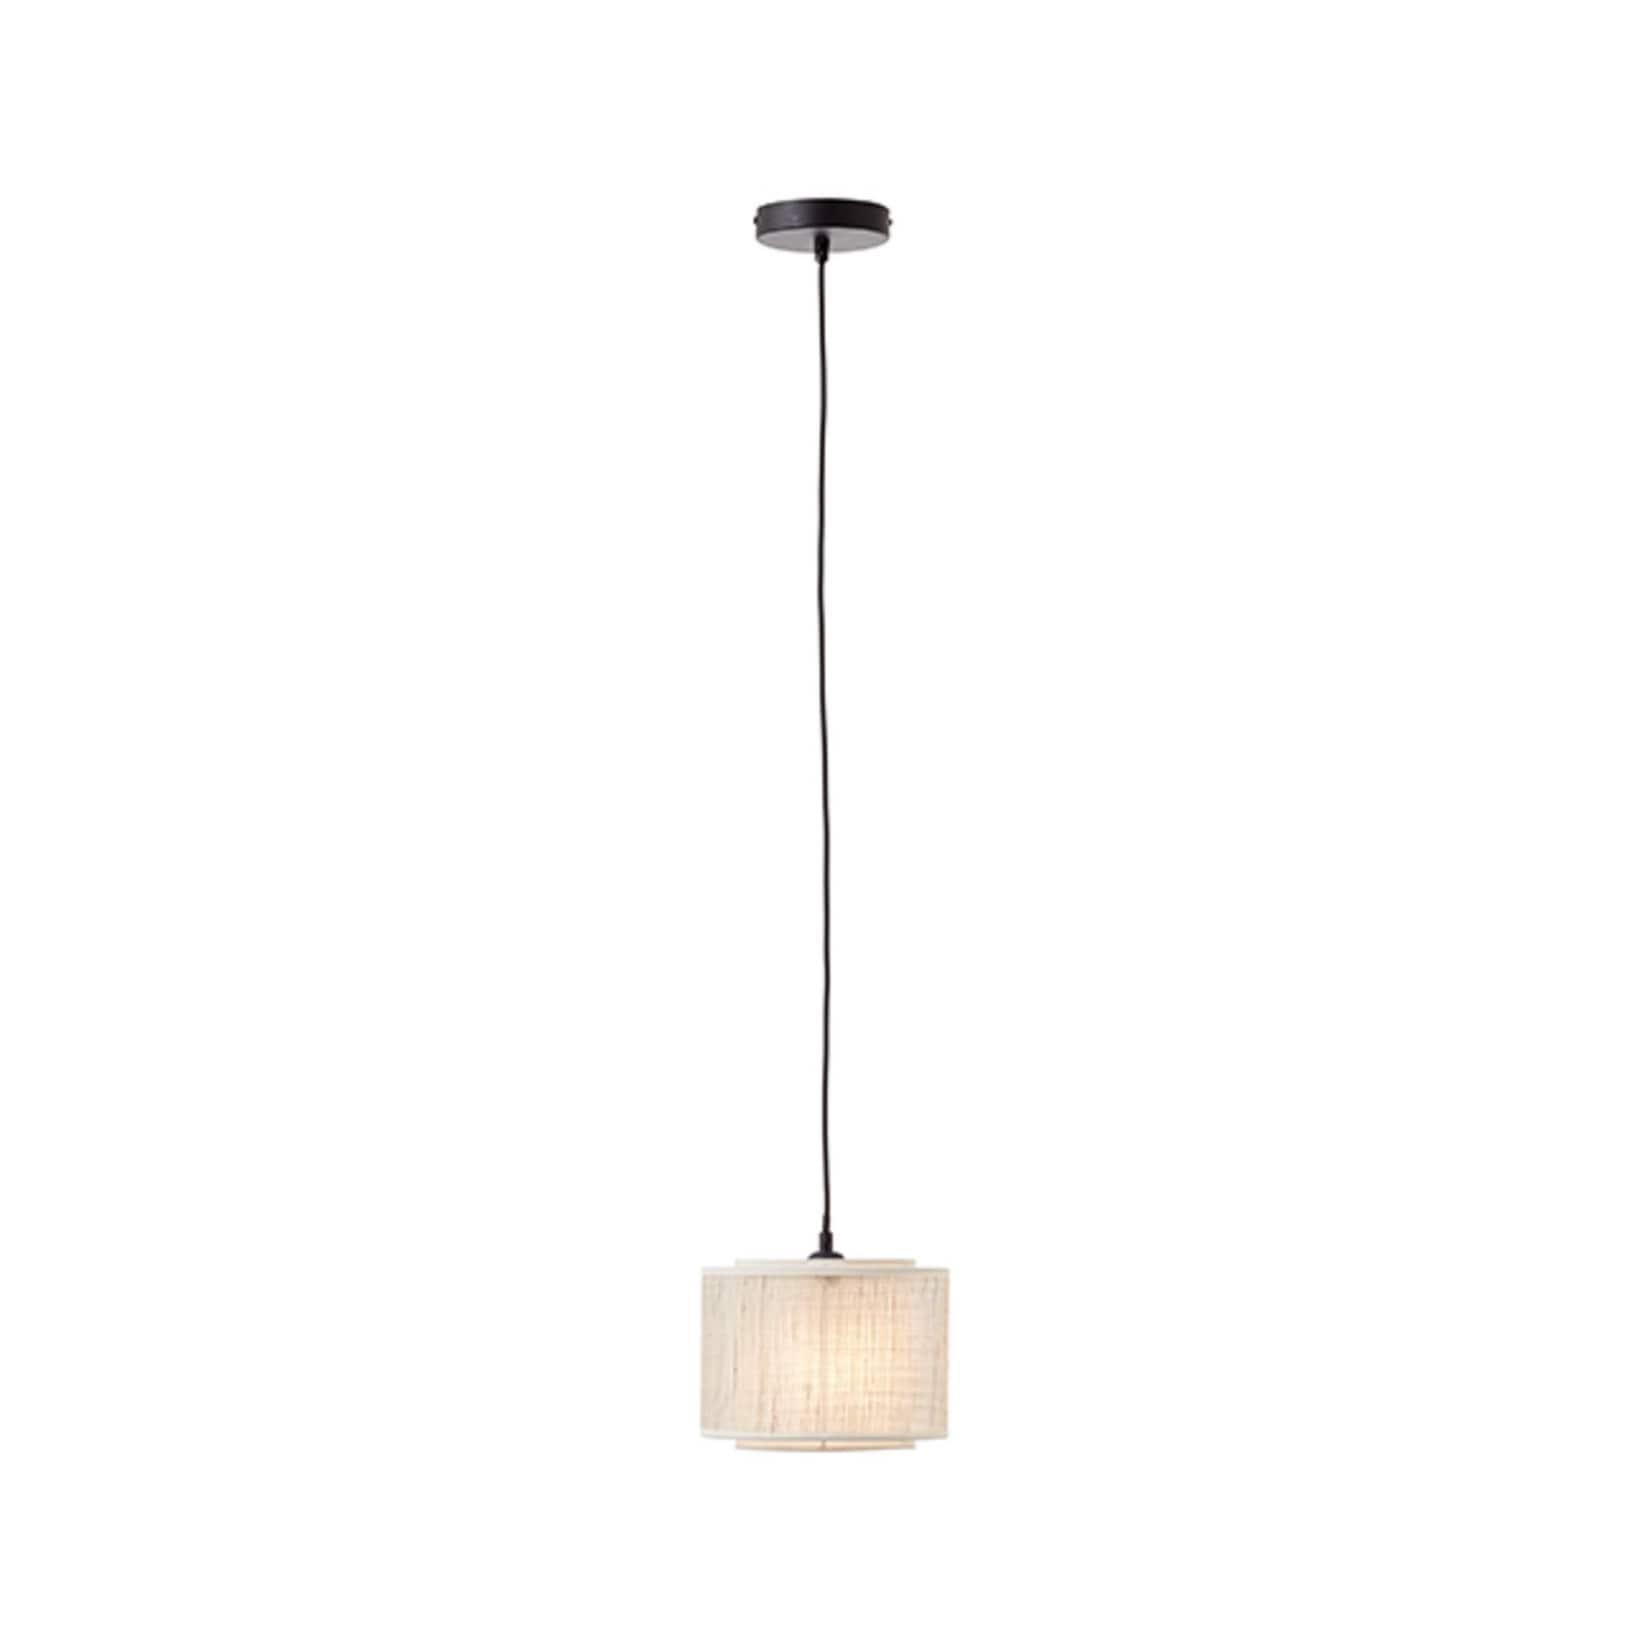 BRILLIANT Lampe, Odar Pendelleuchte 22cm schwarz/beige, 1x A60, E27, 42W,  Kabel kürzbar / in der Höhe einstellbar kaufen bei